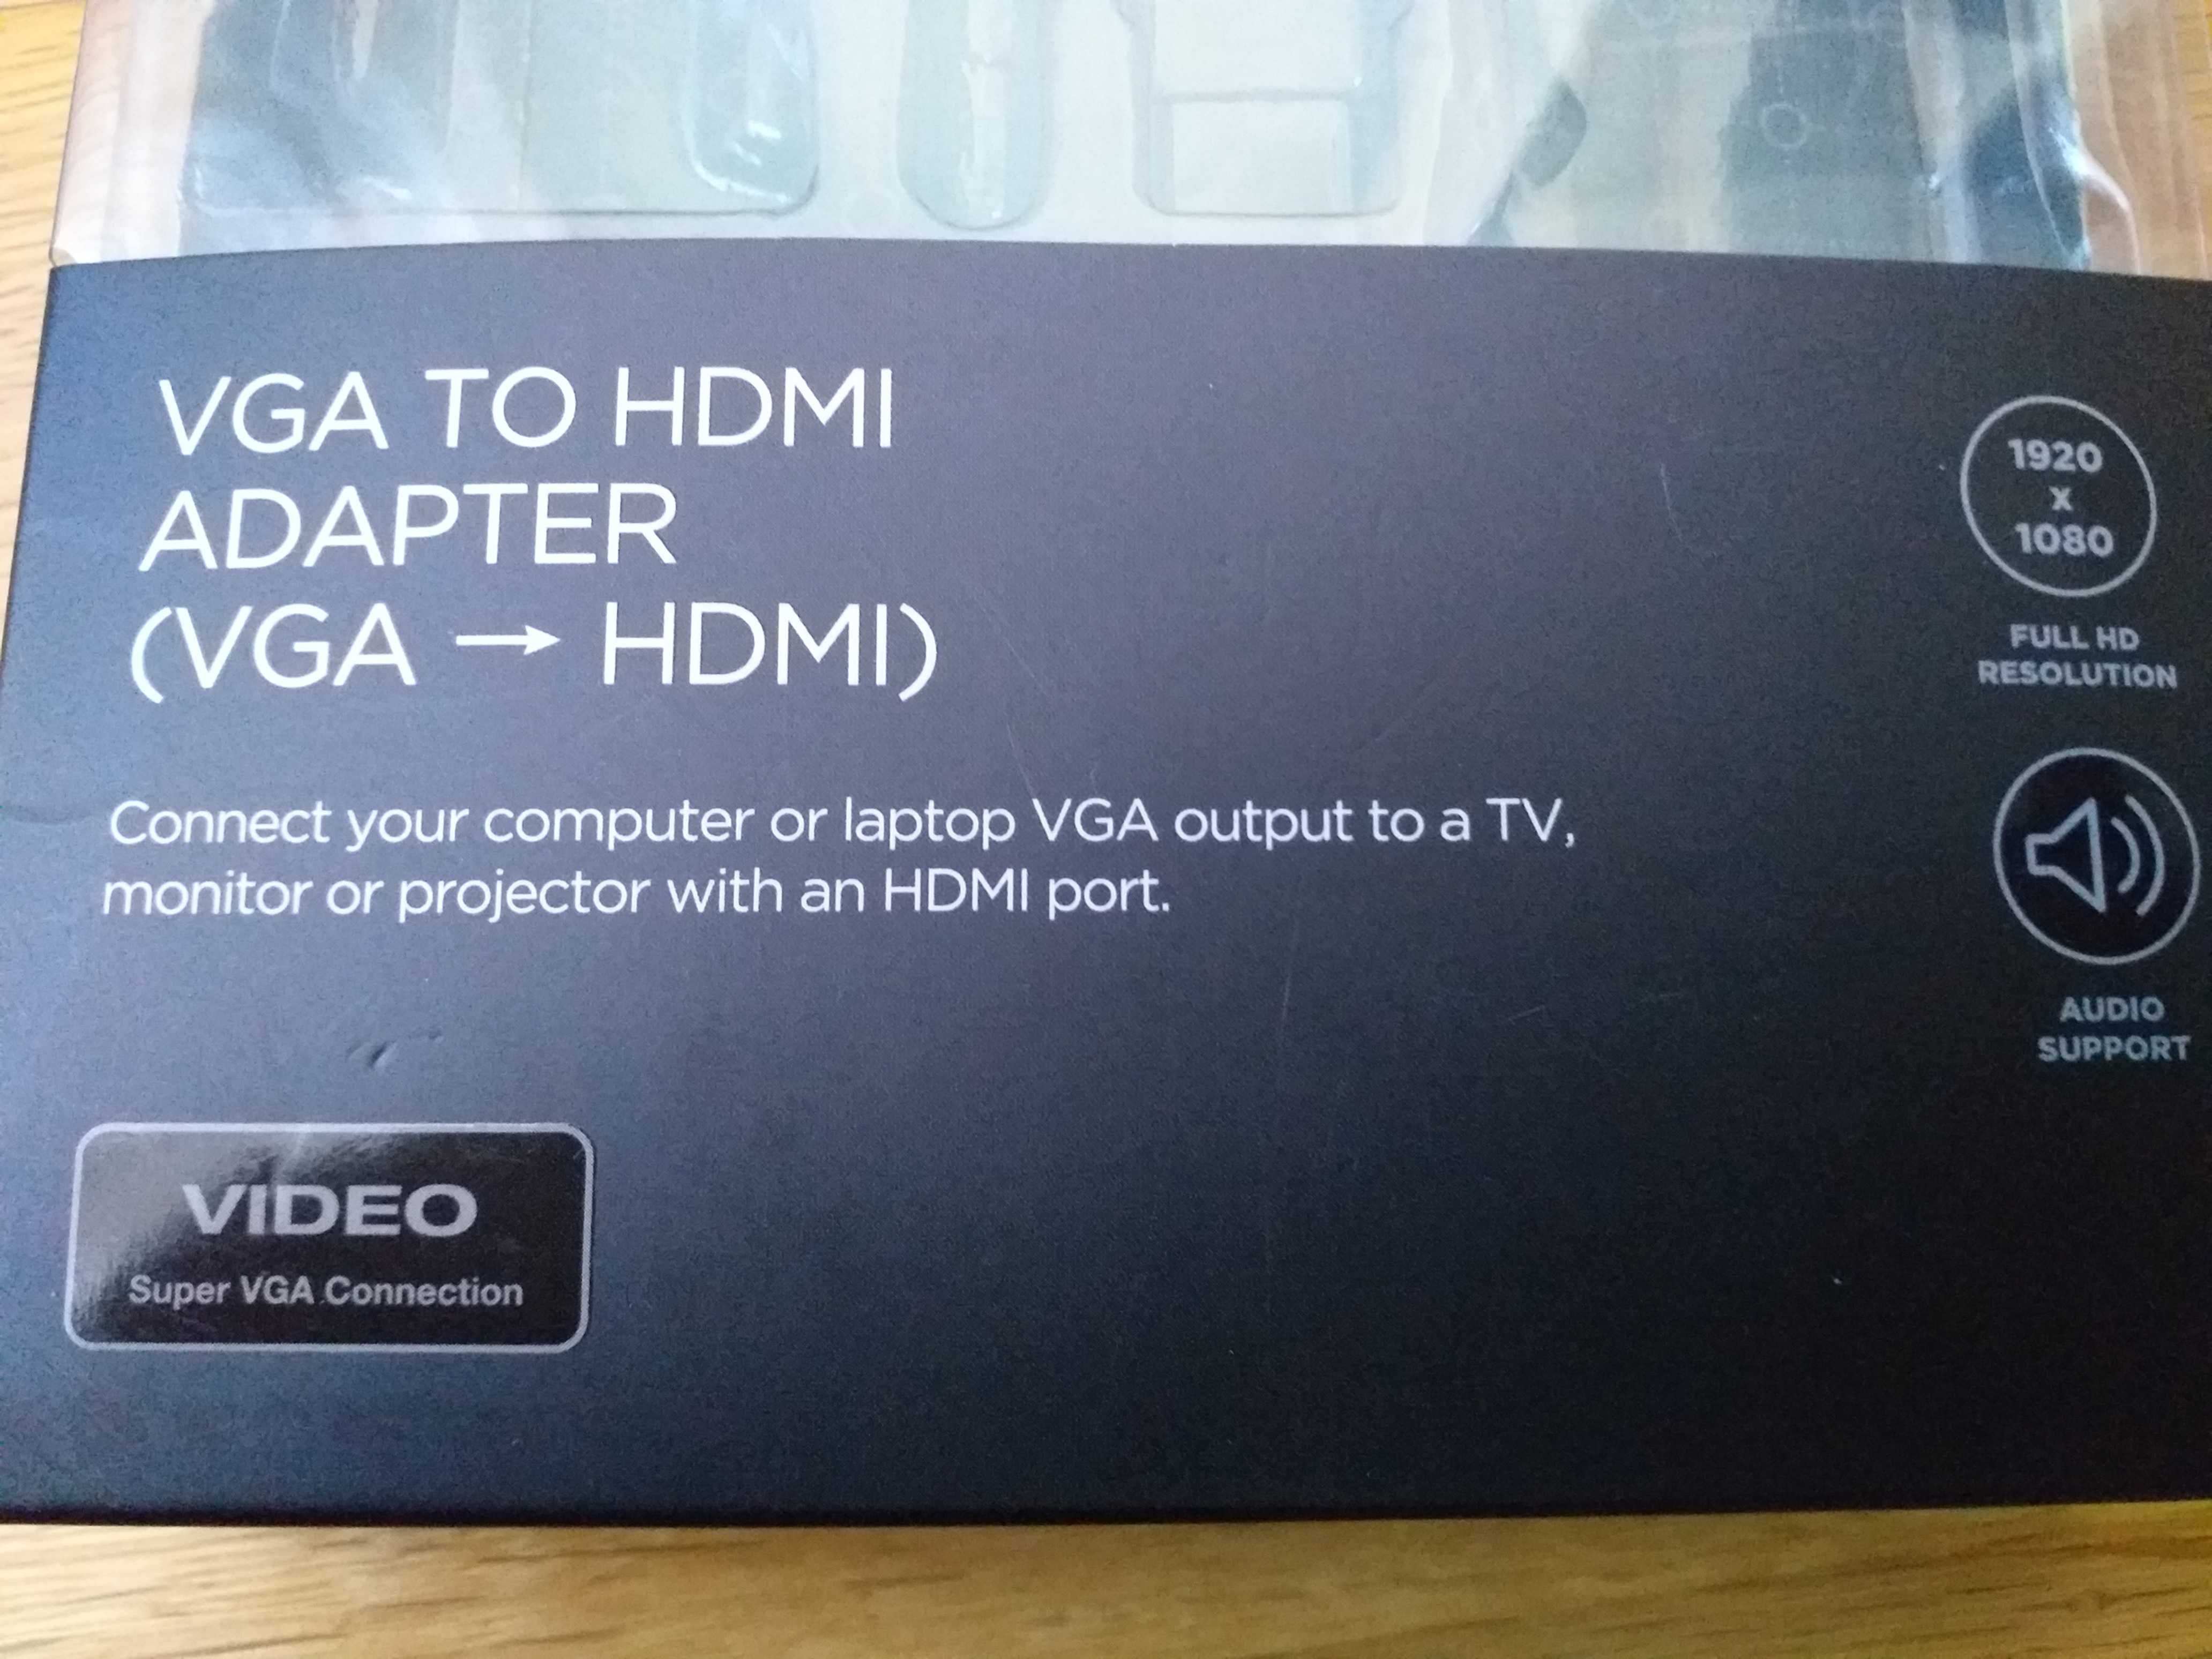 Cabo adaptador de VGA para HDMI, marca MITSAI